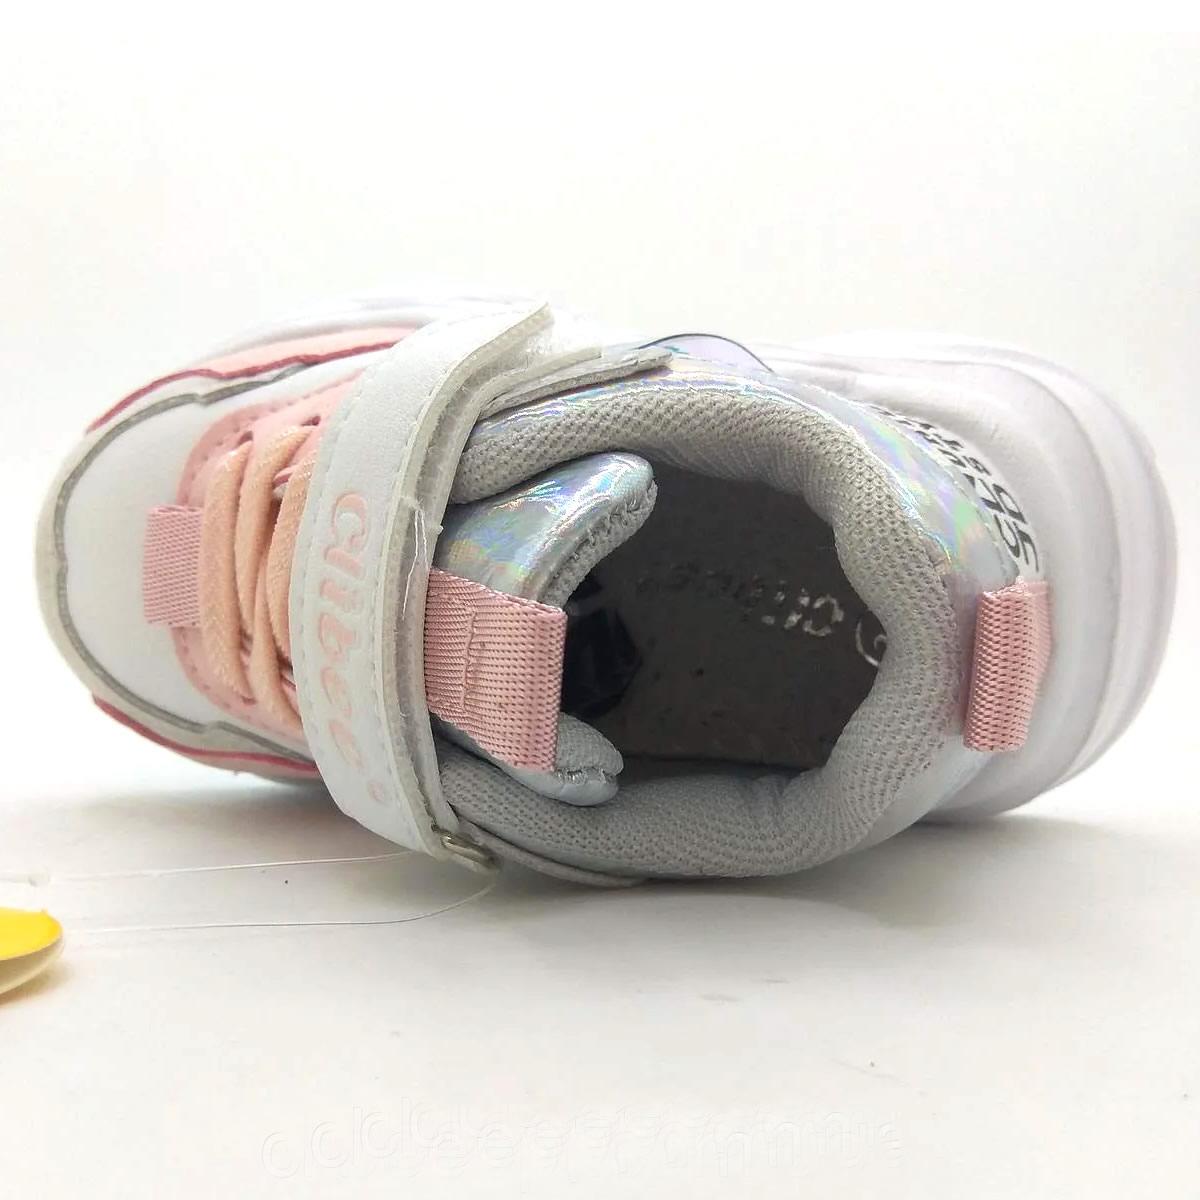 Дитячі кросівки для дівчинки, біло-рожеві (L-193), Clibee